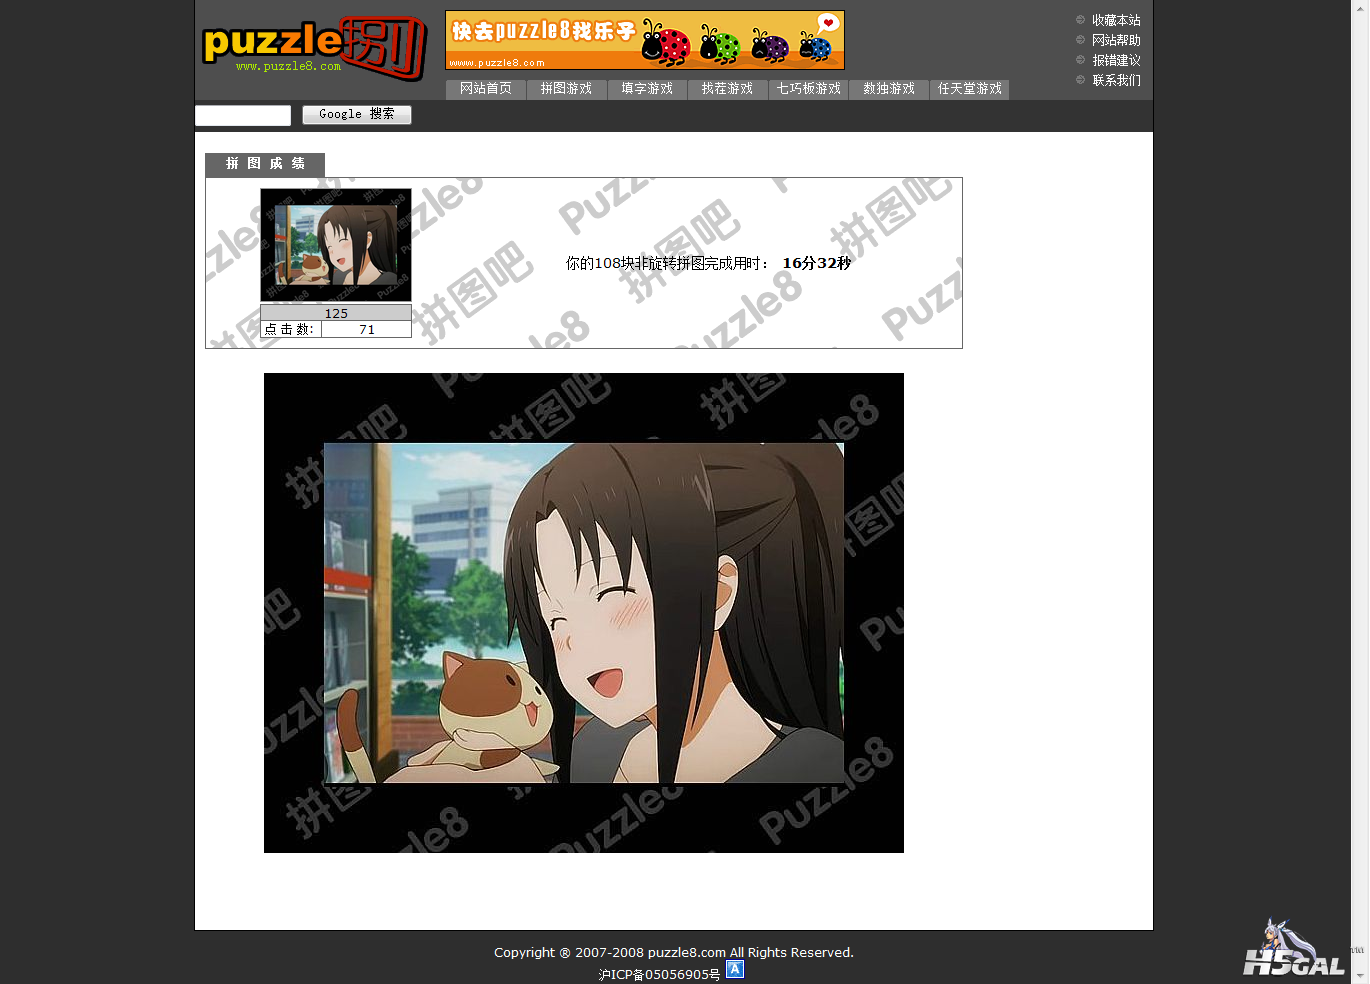 puzzle8 在线拼图游戏网站,拼图游戏.png